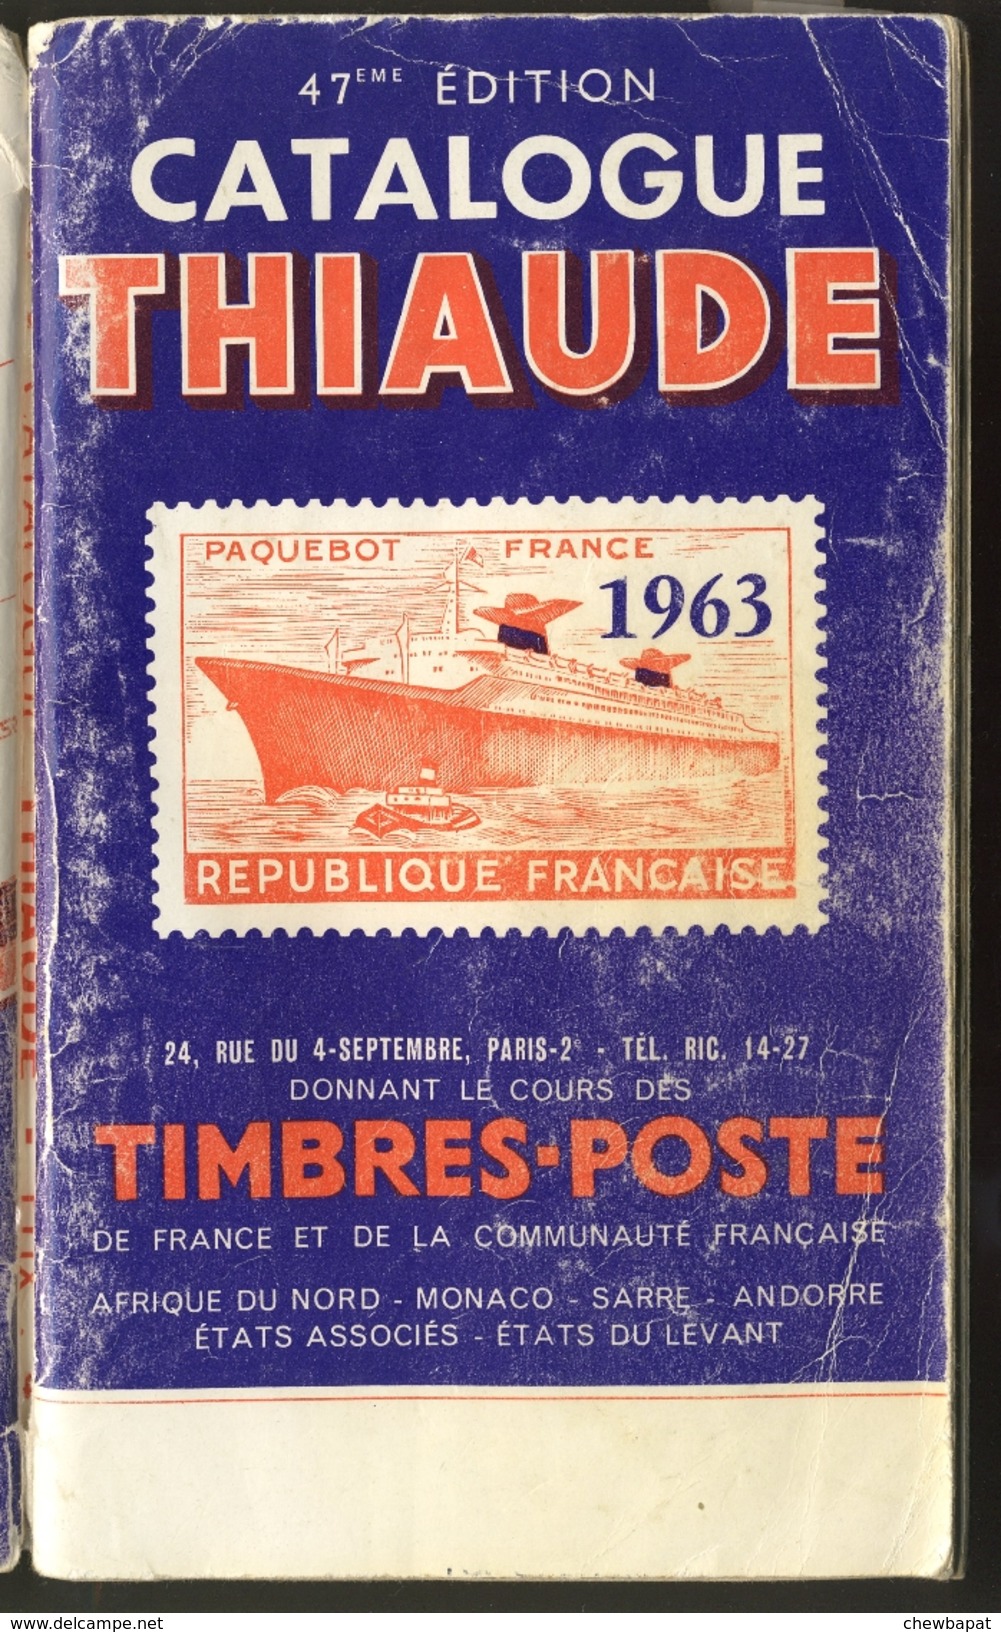 Catalogue Thiaude 1963 47ème édition - Frankrijk